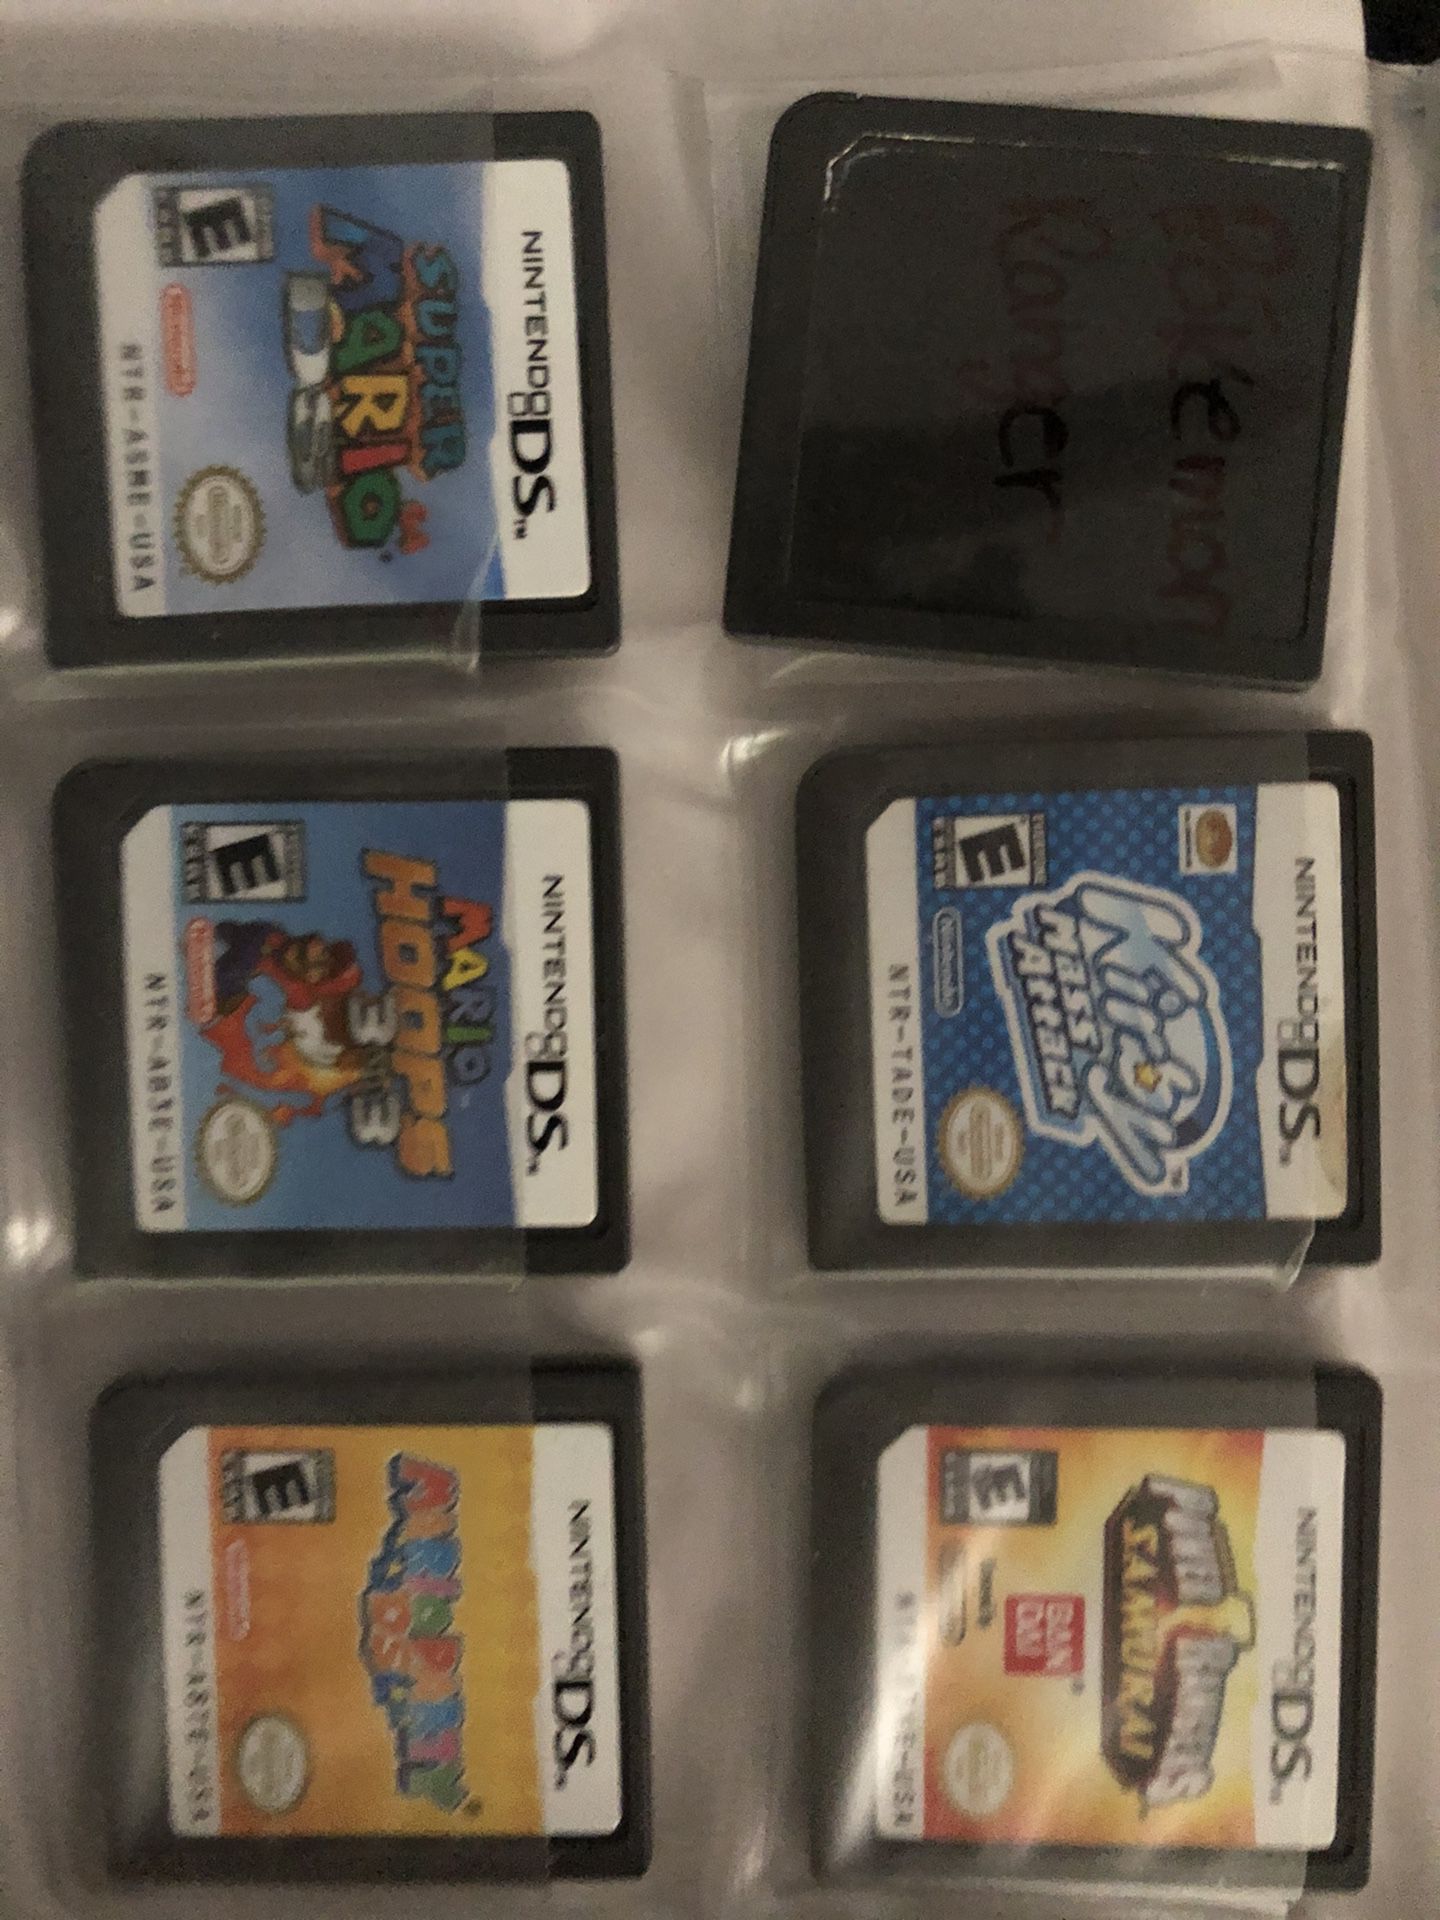 18 Nintendo DS games